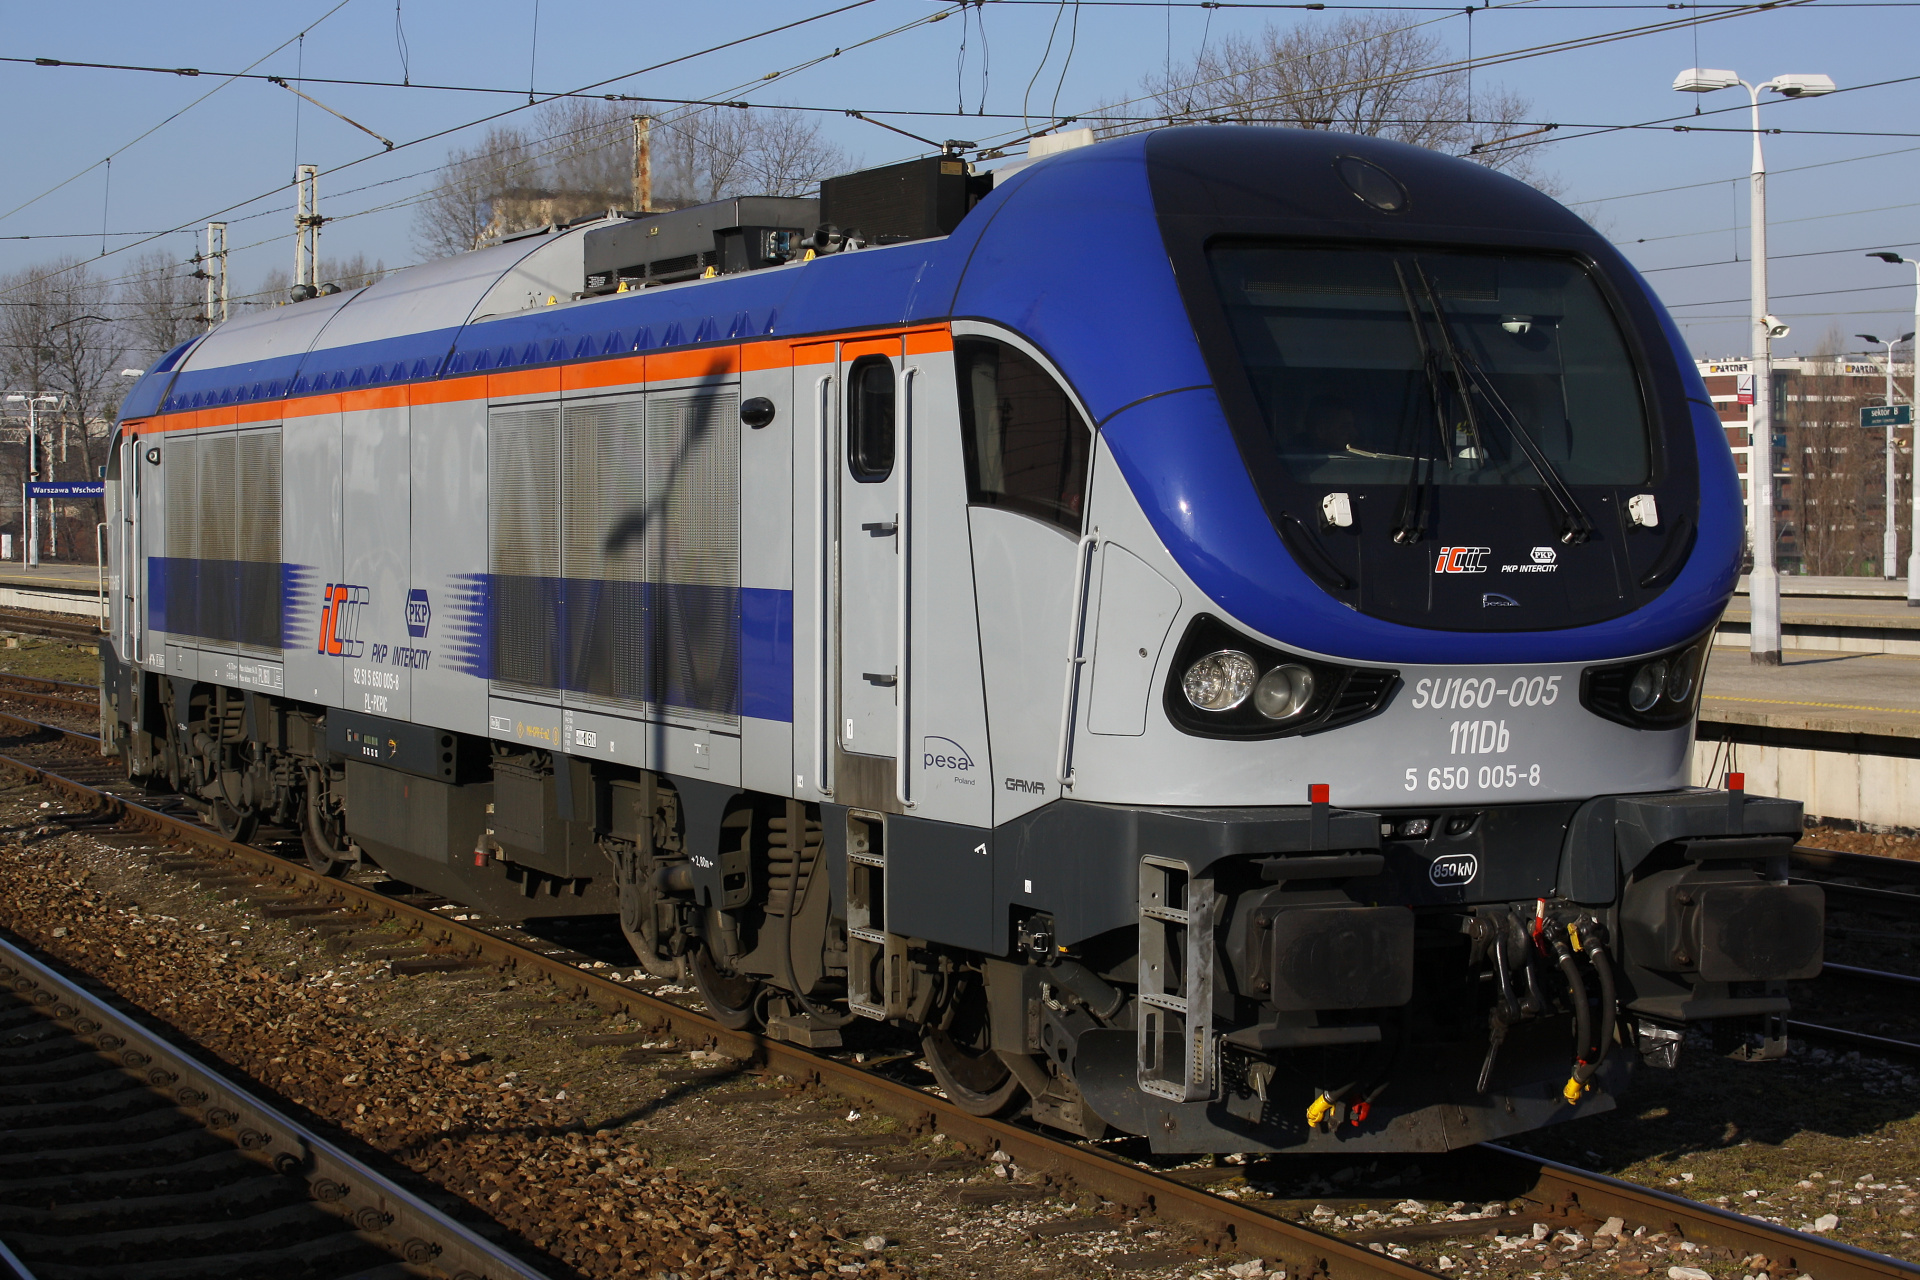 111Db SU160-005 (Pojazdy » Pociągi i lokomotywy » Pesa Gama)